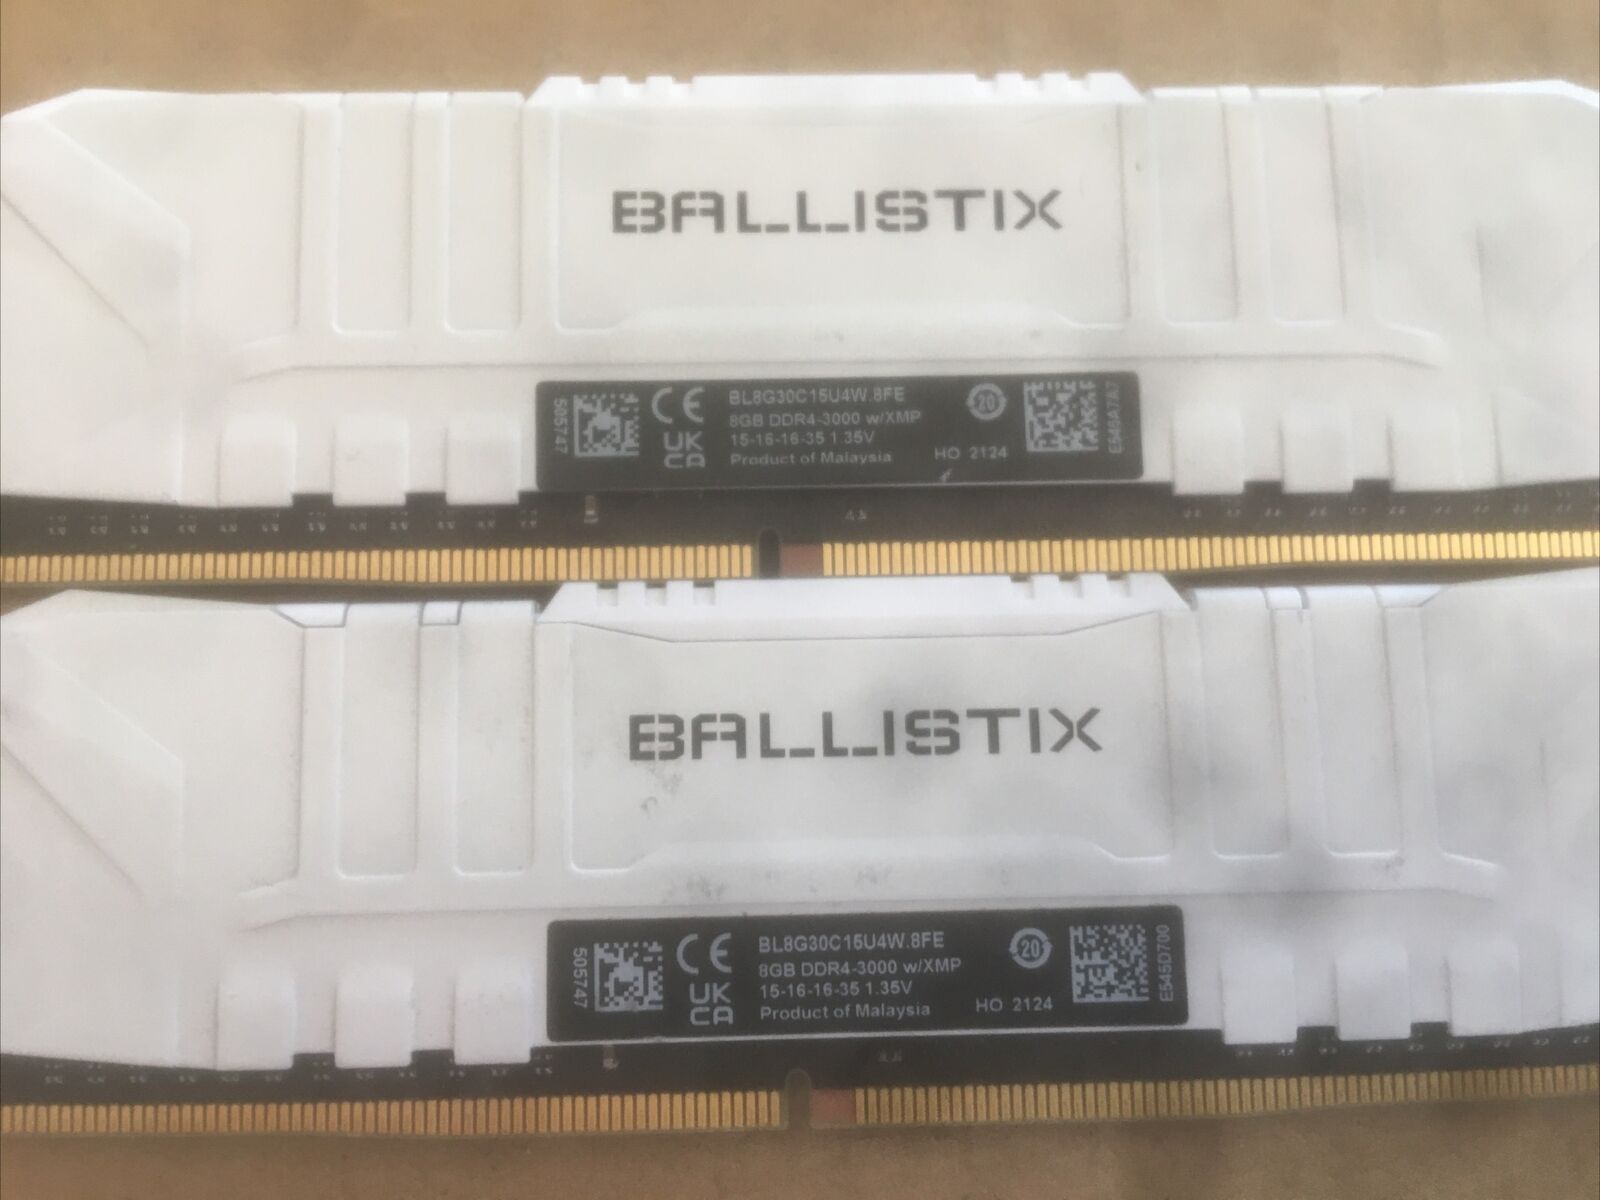 Crucial Ballistix 3000MHz DDR4 RAM Memory 2X8GB 16GB BL8G30C15U4W.8FE PC4-24000